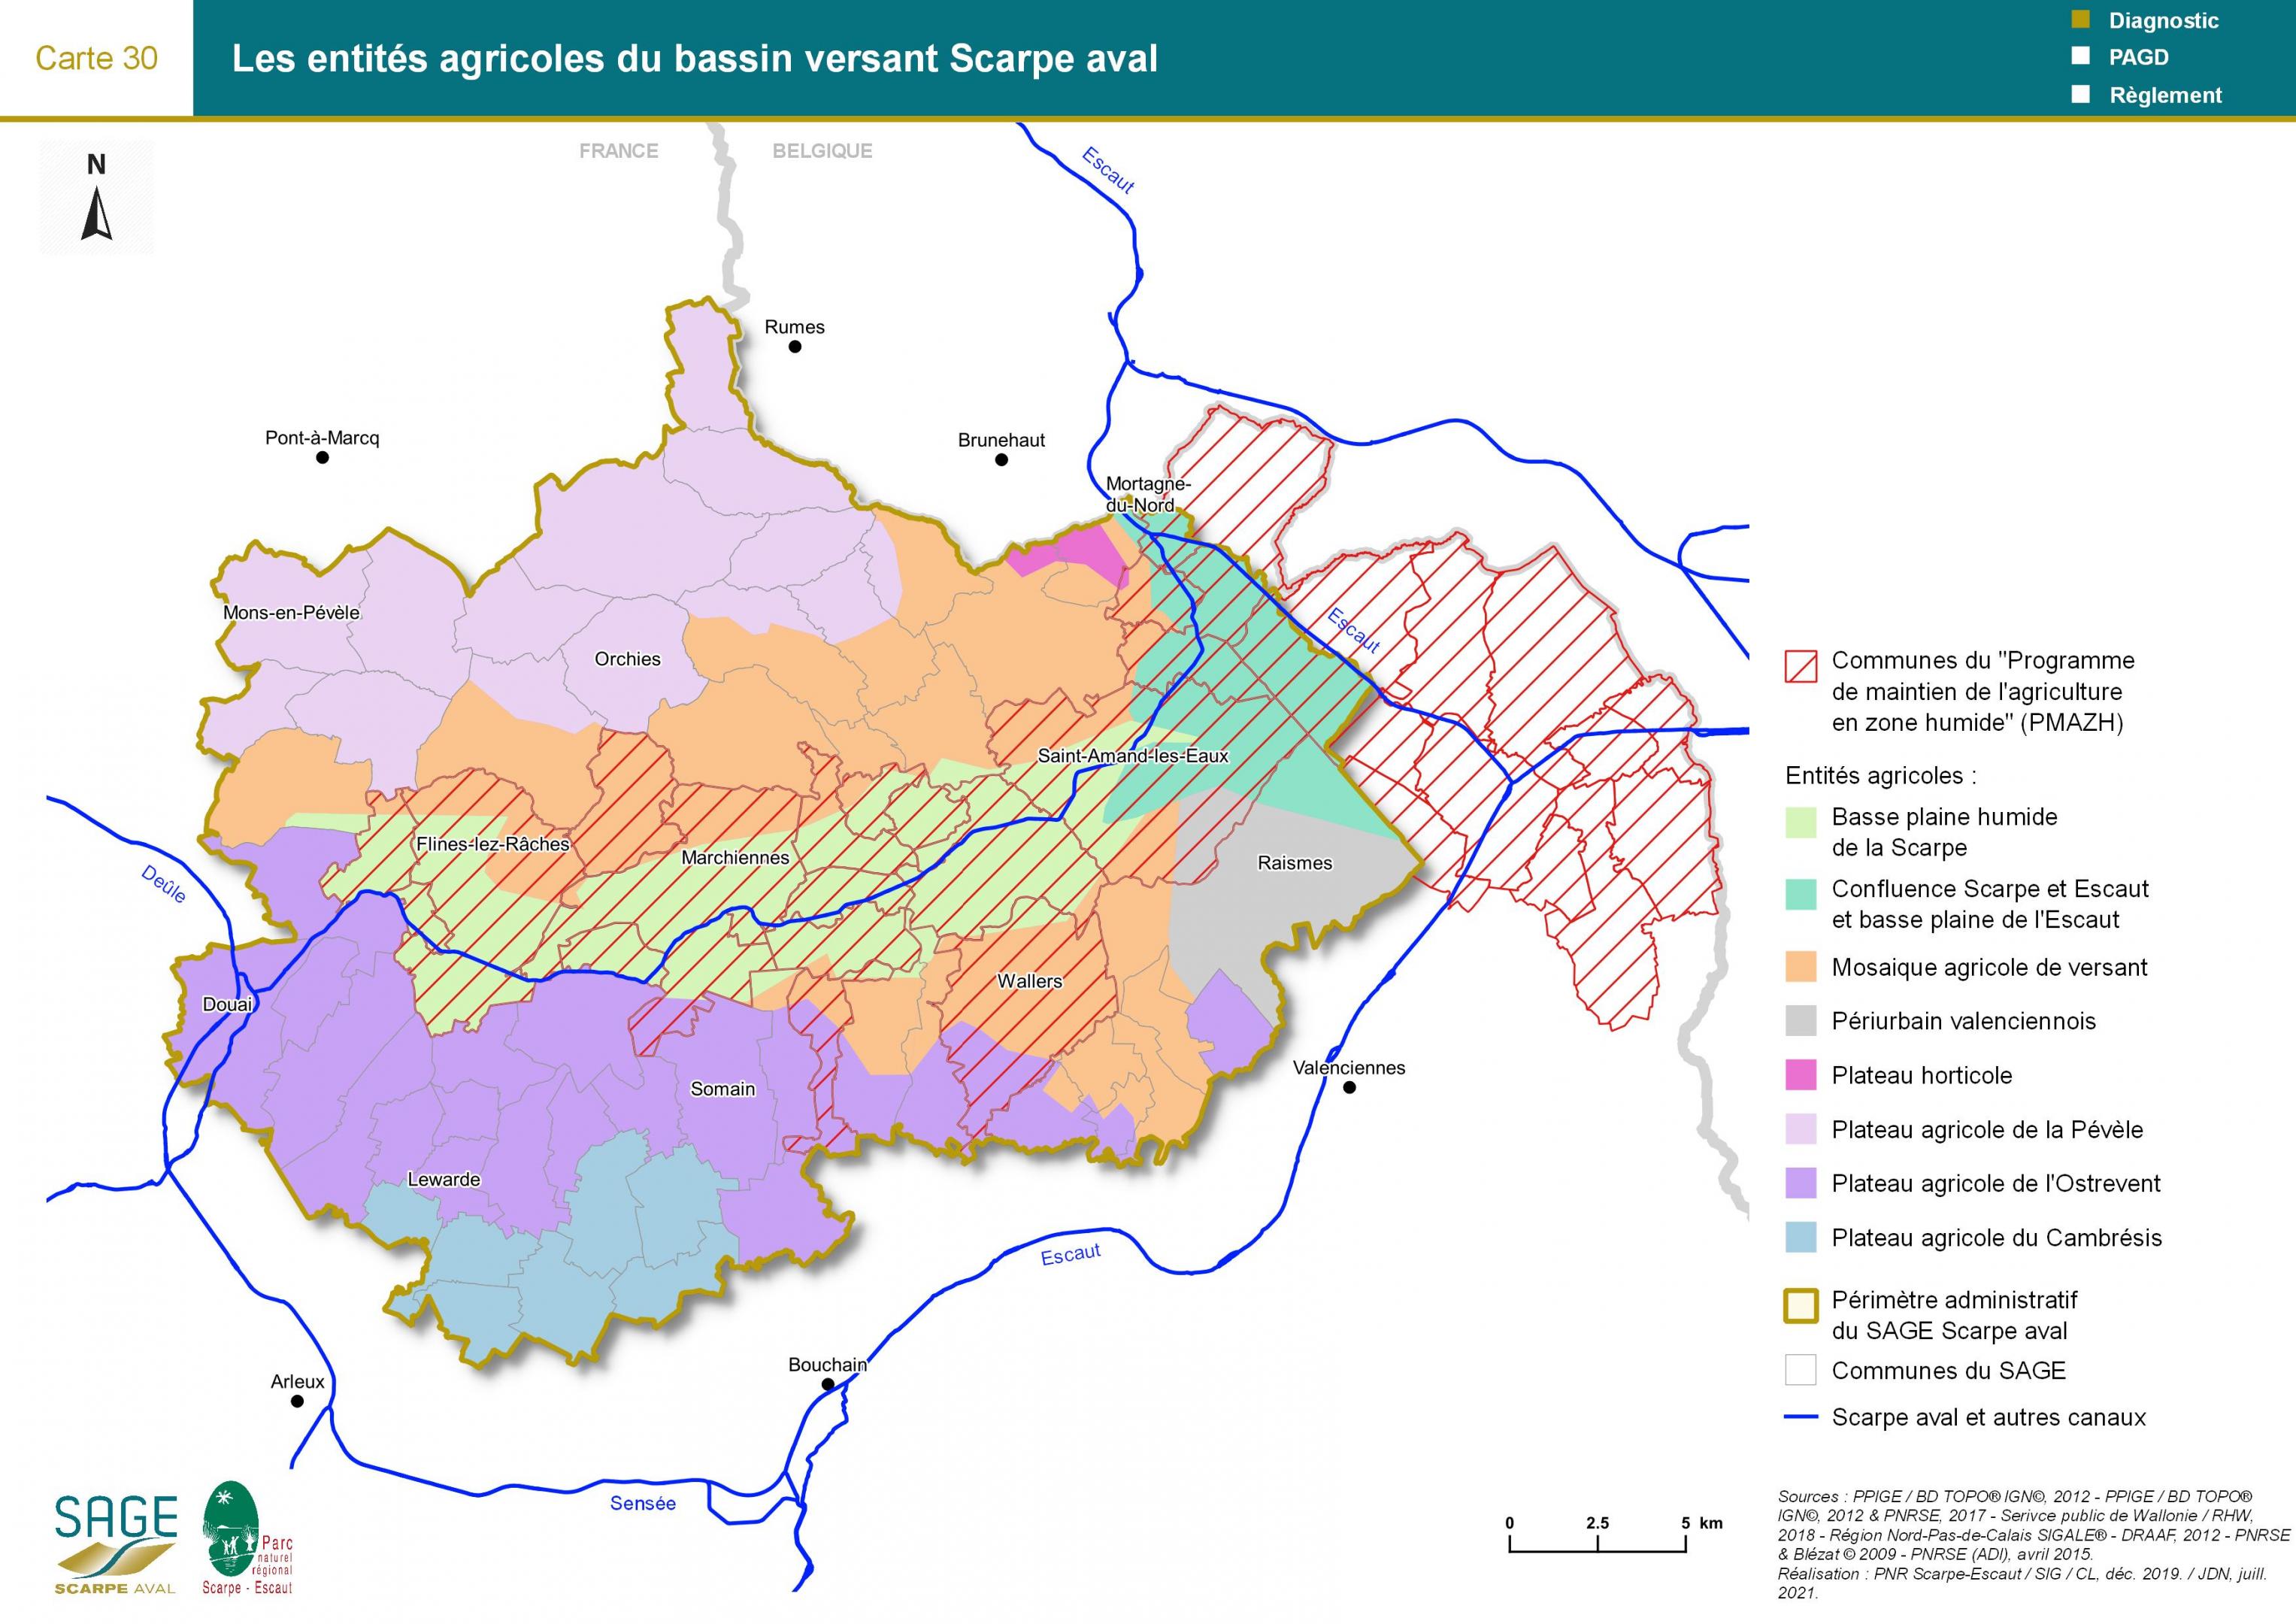 Etat des lieux - Carte 30 : Les entités agricoles du bassin versant Scarpe aval